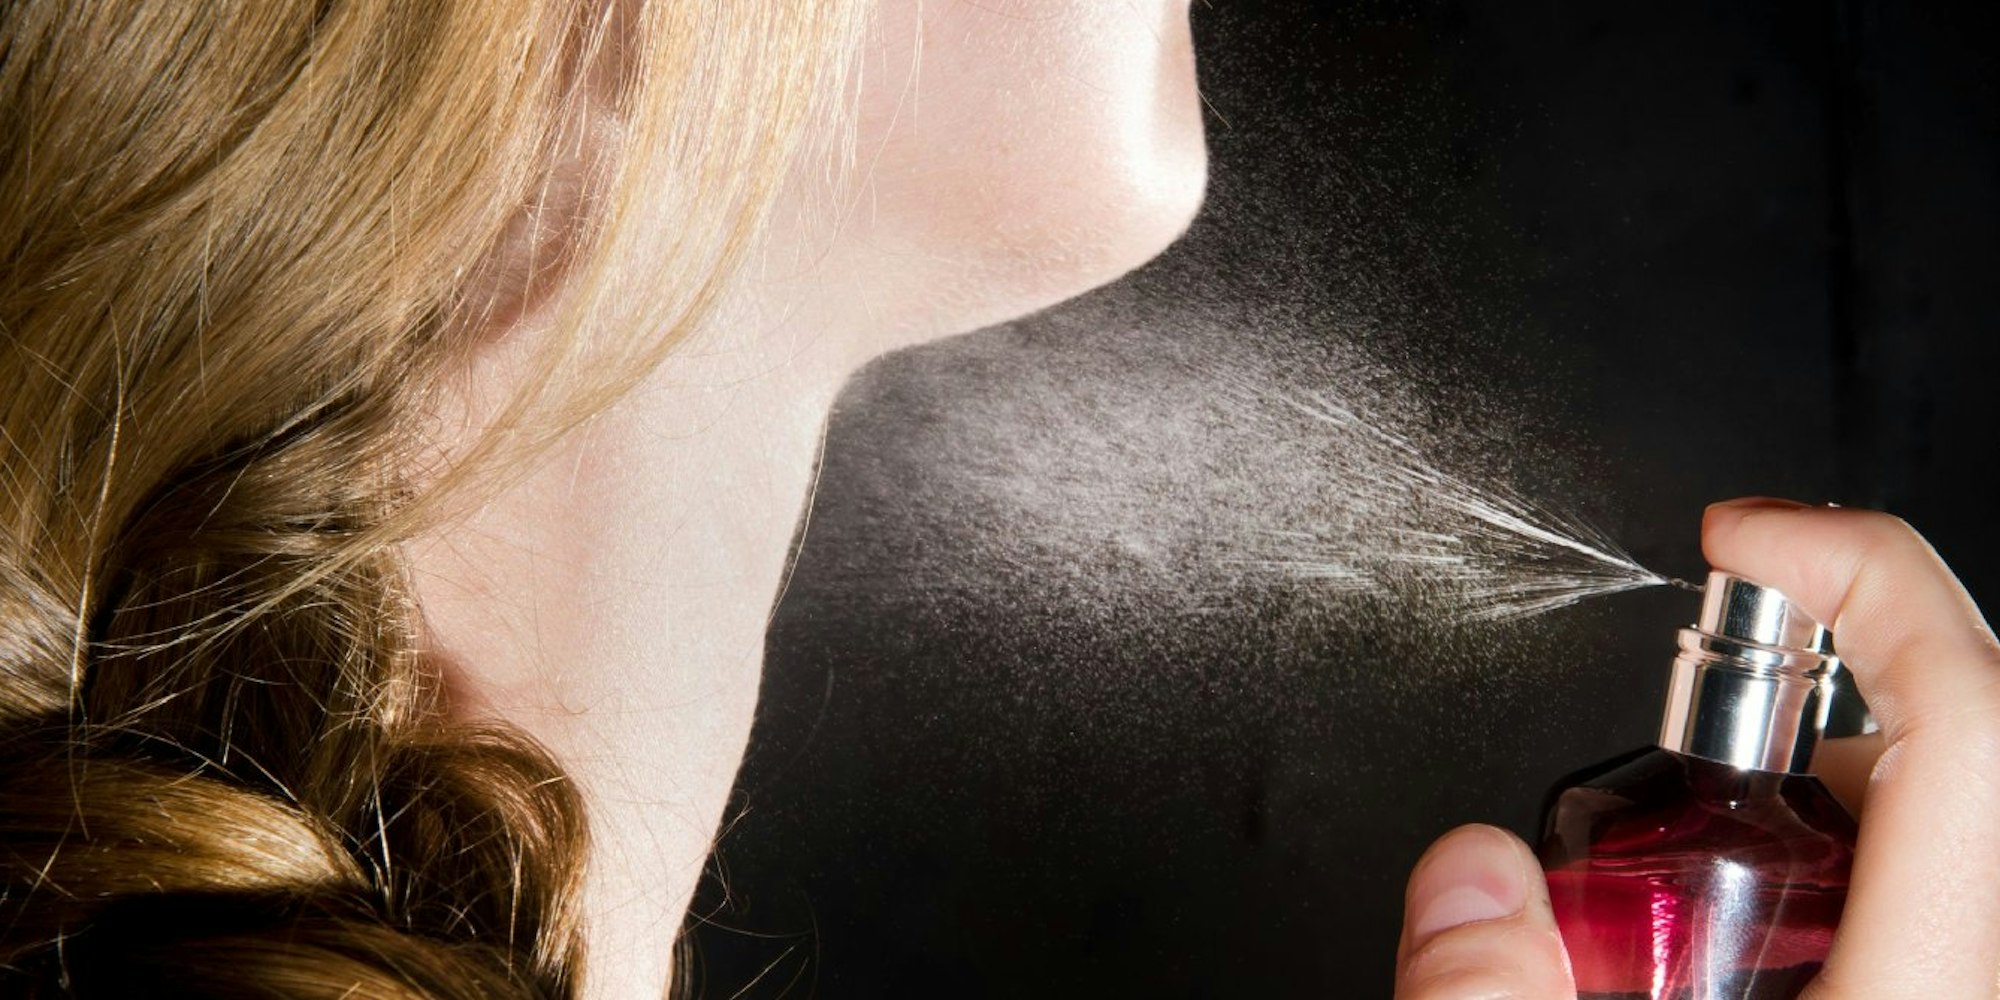 Duftstoffe in Parfüm oder Kosmetikartikeln sind häufig Auslöser von Kontaktallergien.